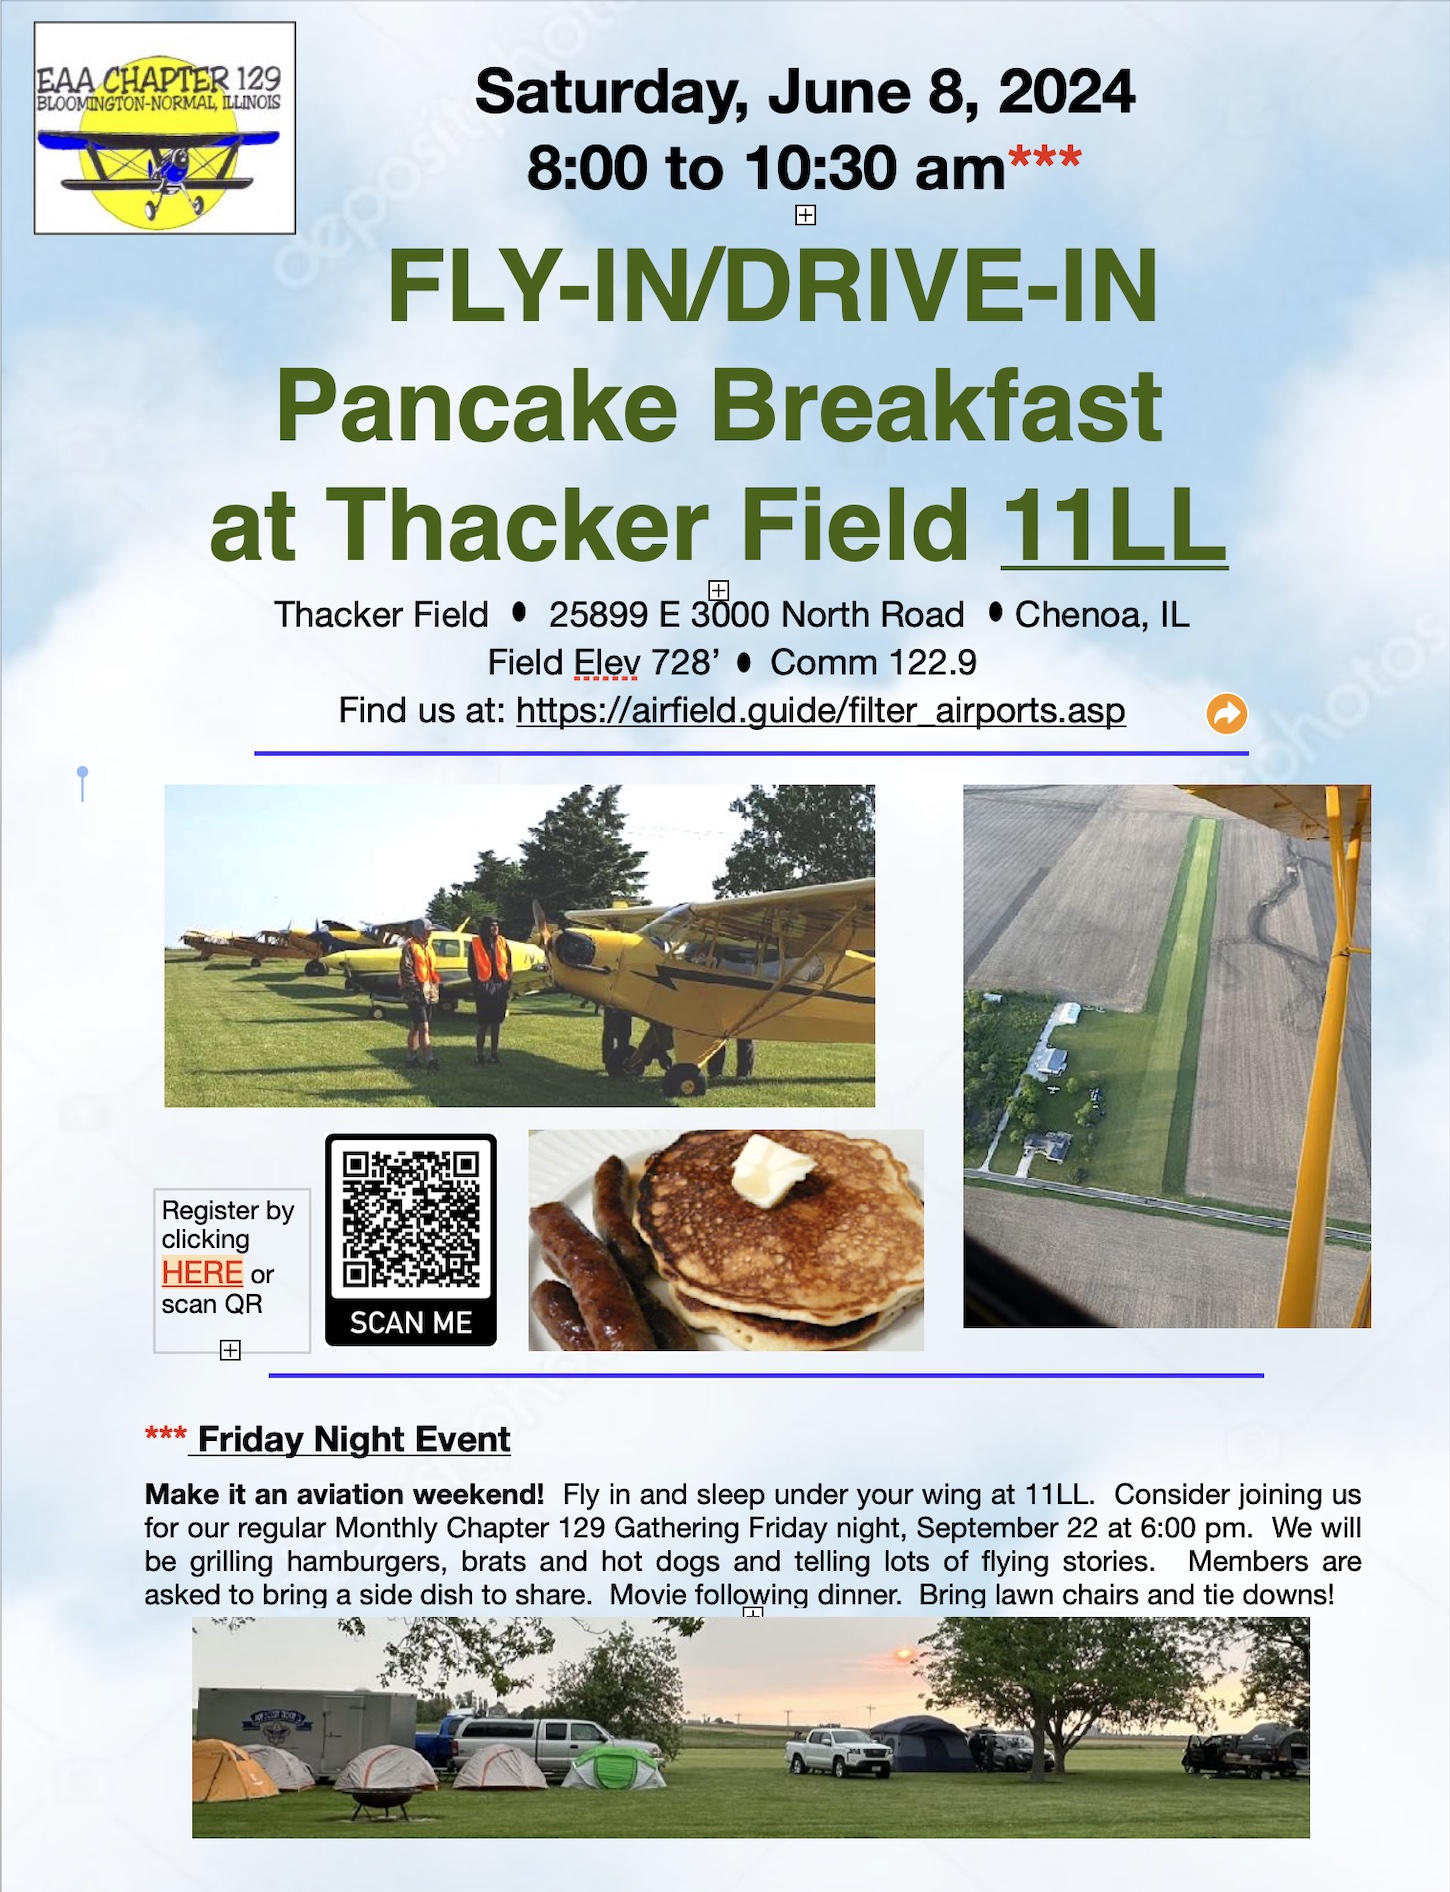 Fly-in Drive-in to Thacker Field